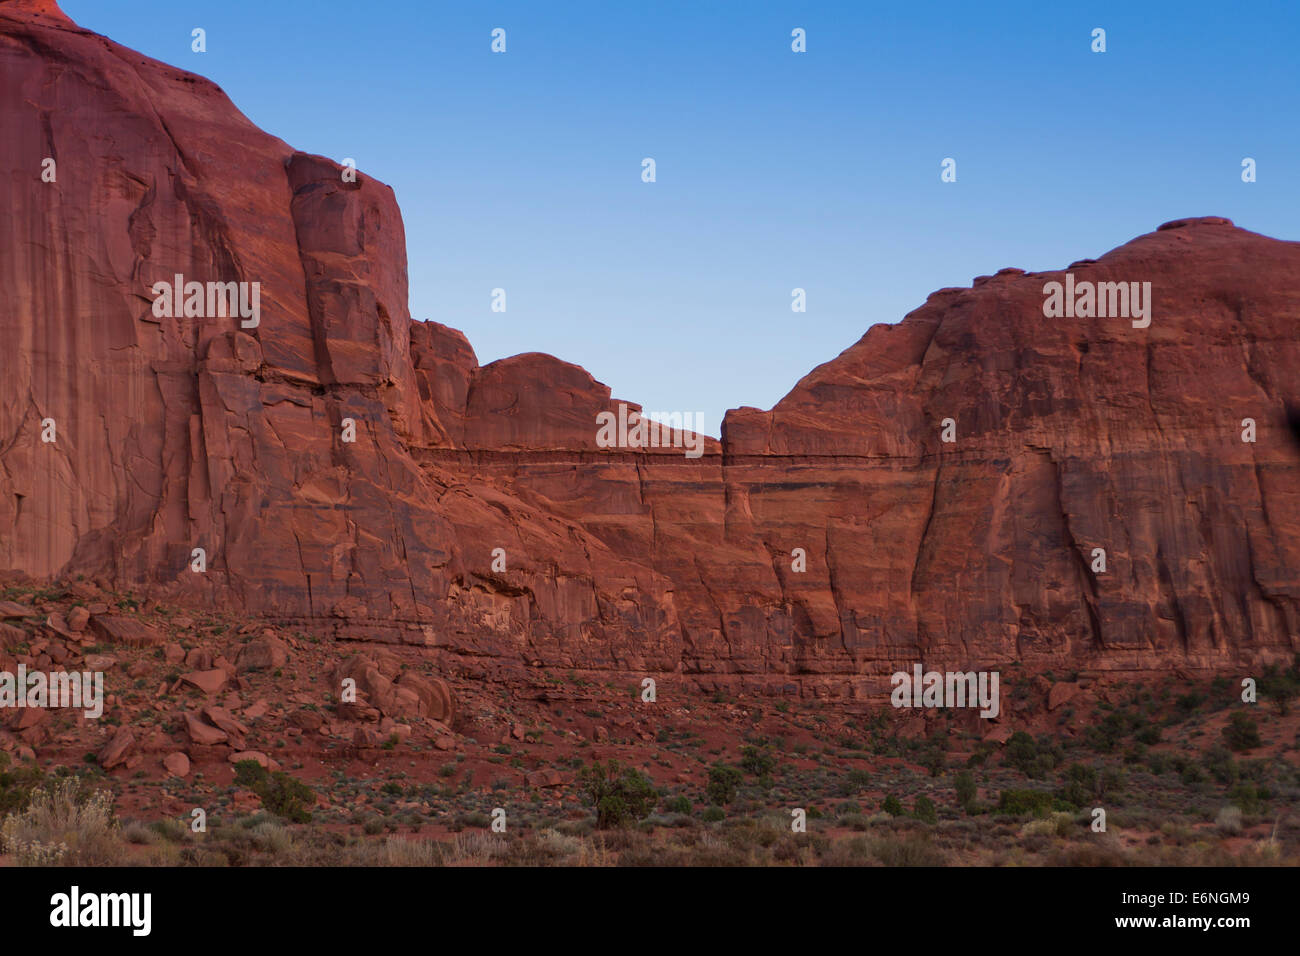 Formación de roca arenisca roja expuestos - Utah, EE.UU. Foto de stock